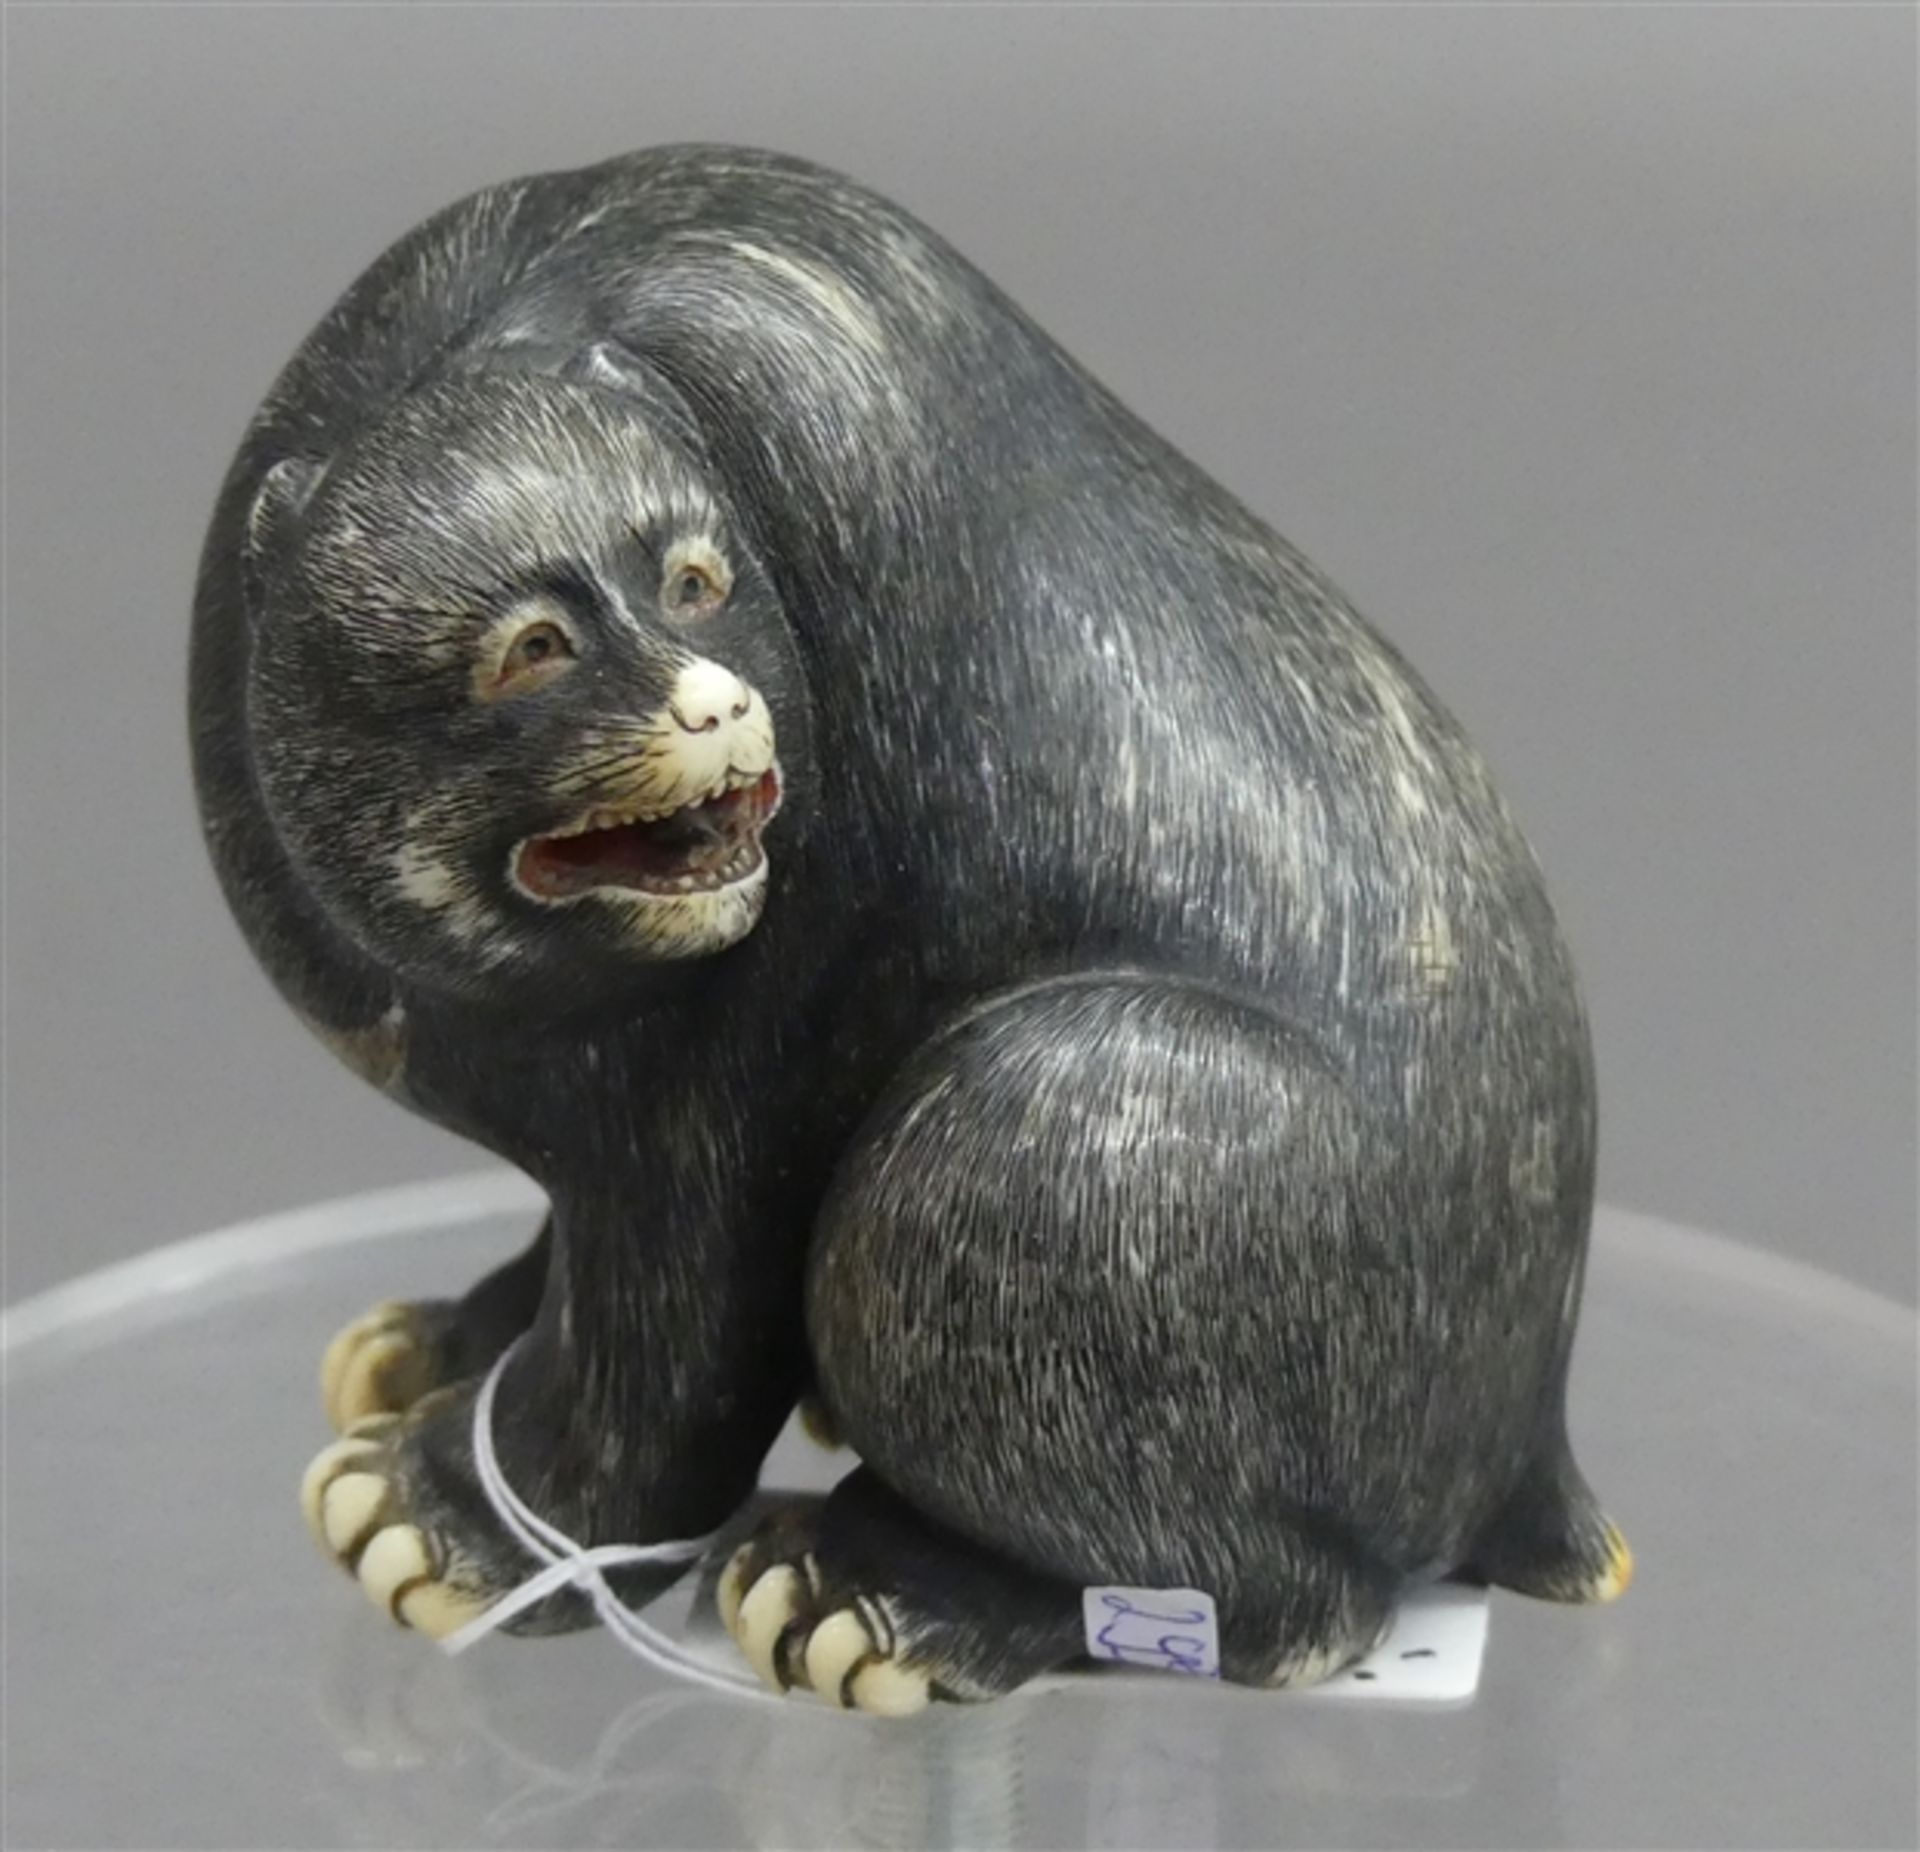 Schnitzarbeit Japan, Elfenbein, um 1920, "sitzender Bär", graviert, Spannungsriss, h 6 cm,